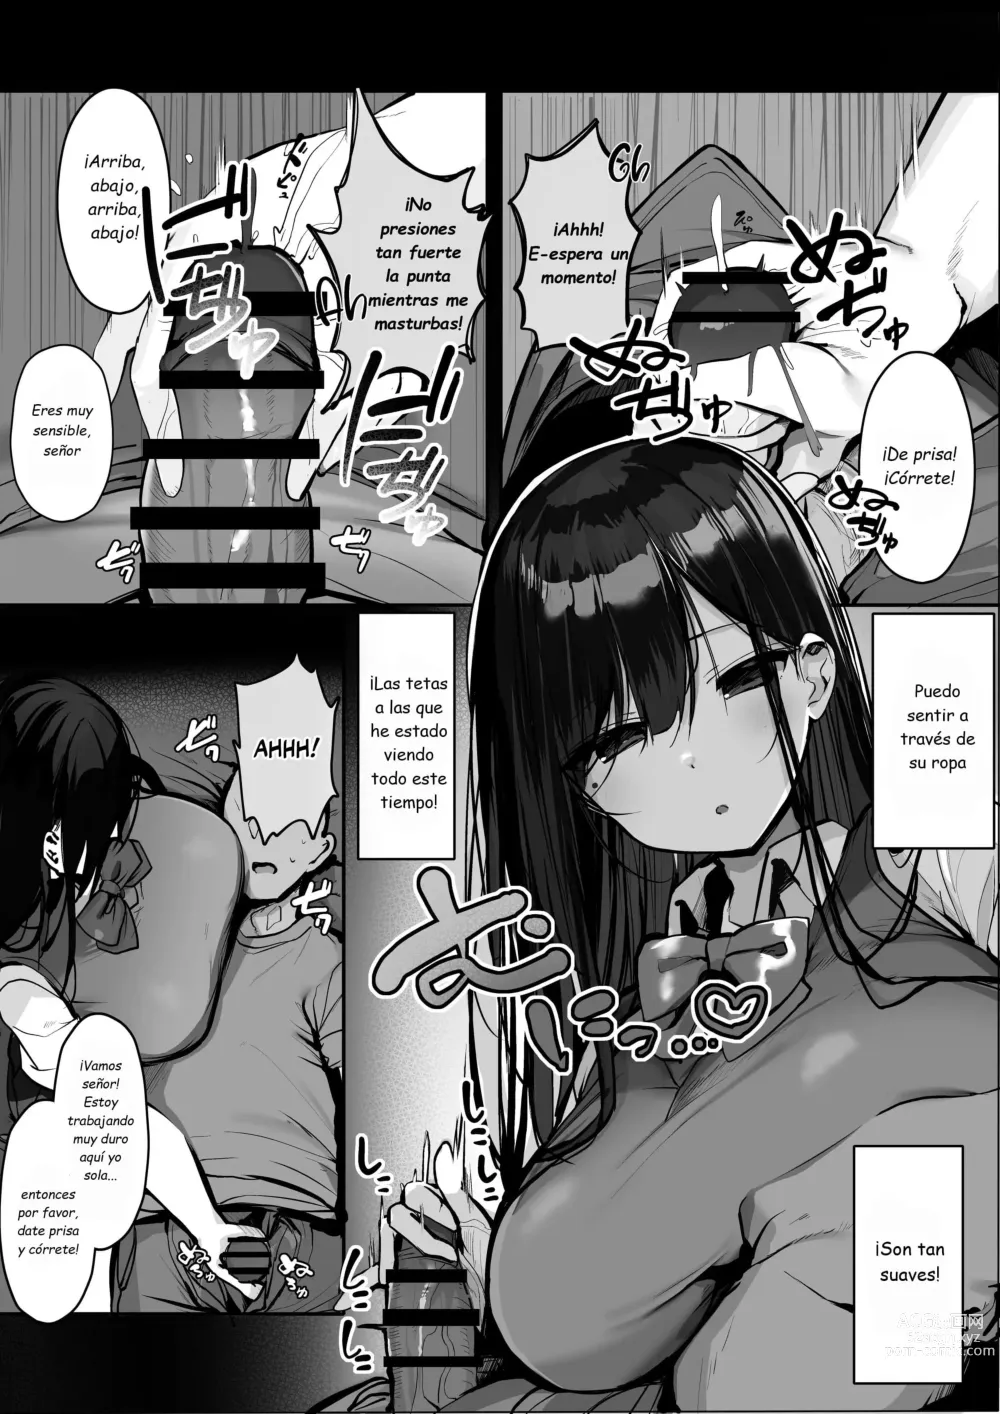 Page 8 of doujinshi Hey, donde está el condón?